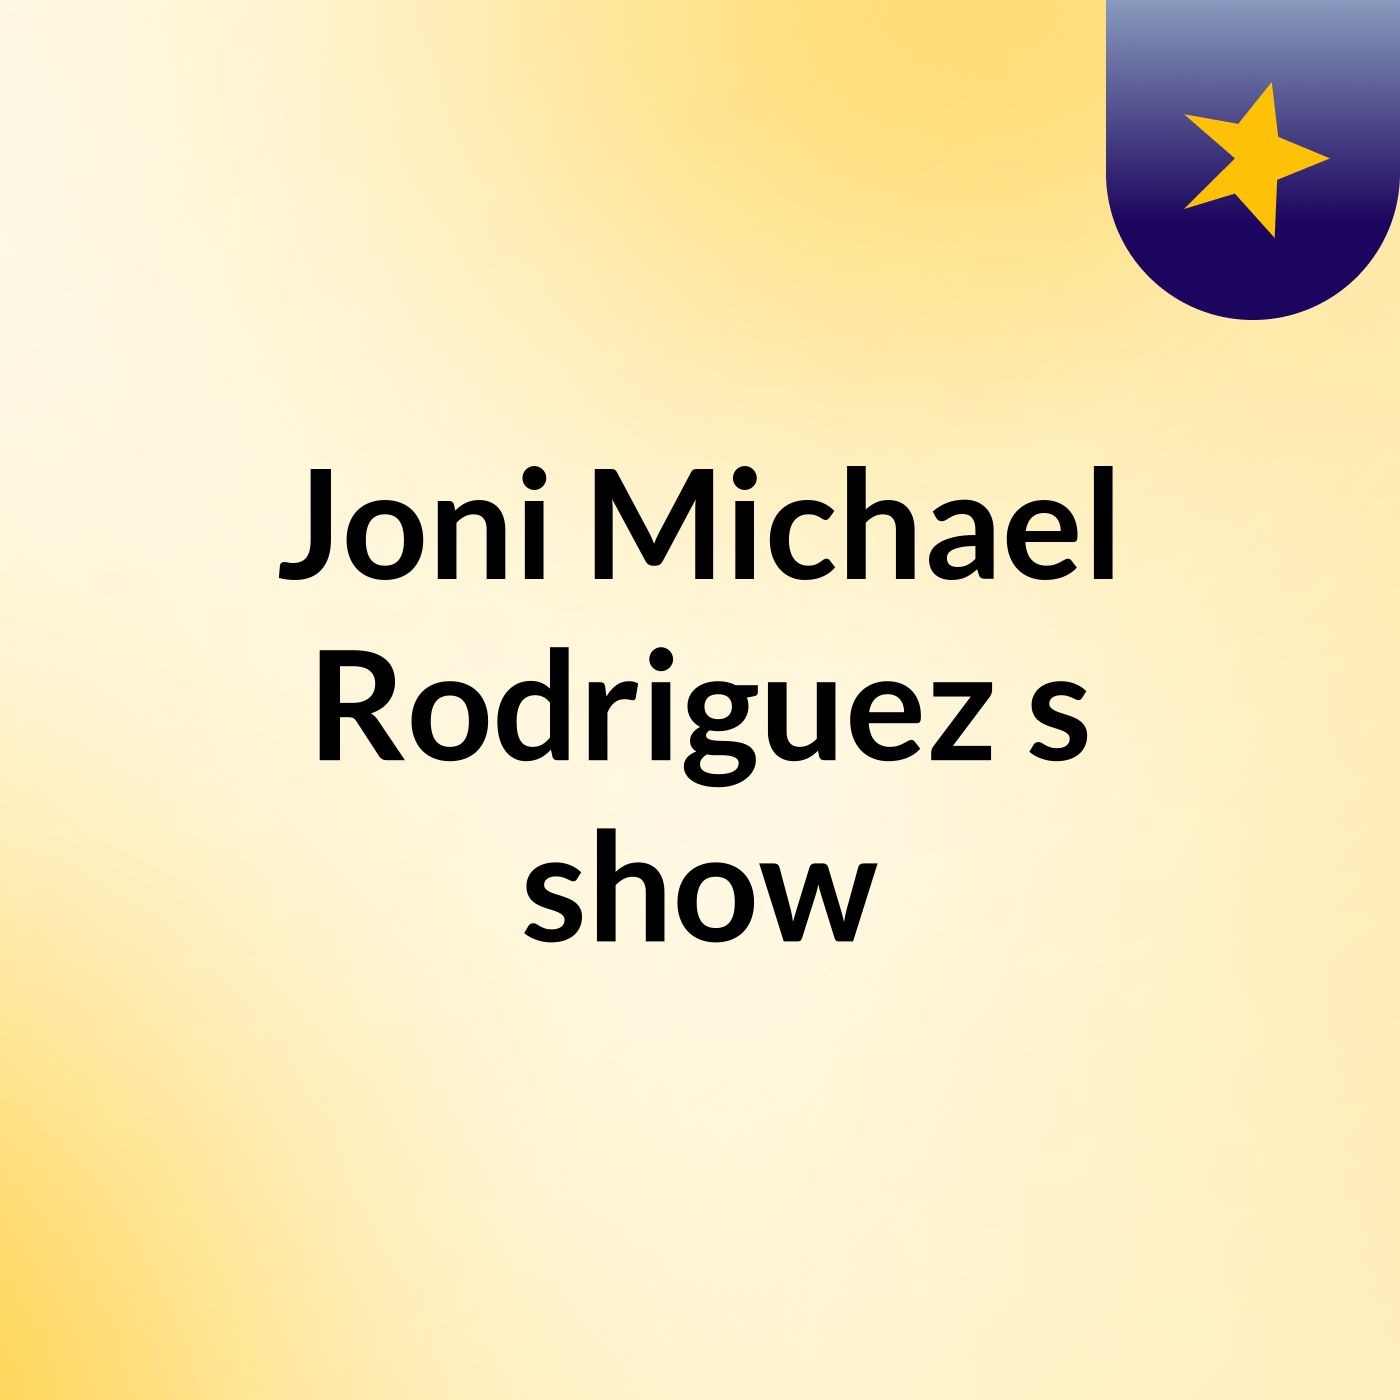 Joni Michael Rodriguez's show